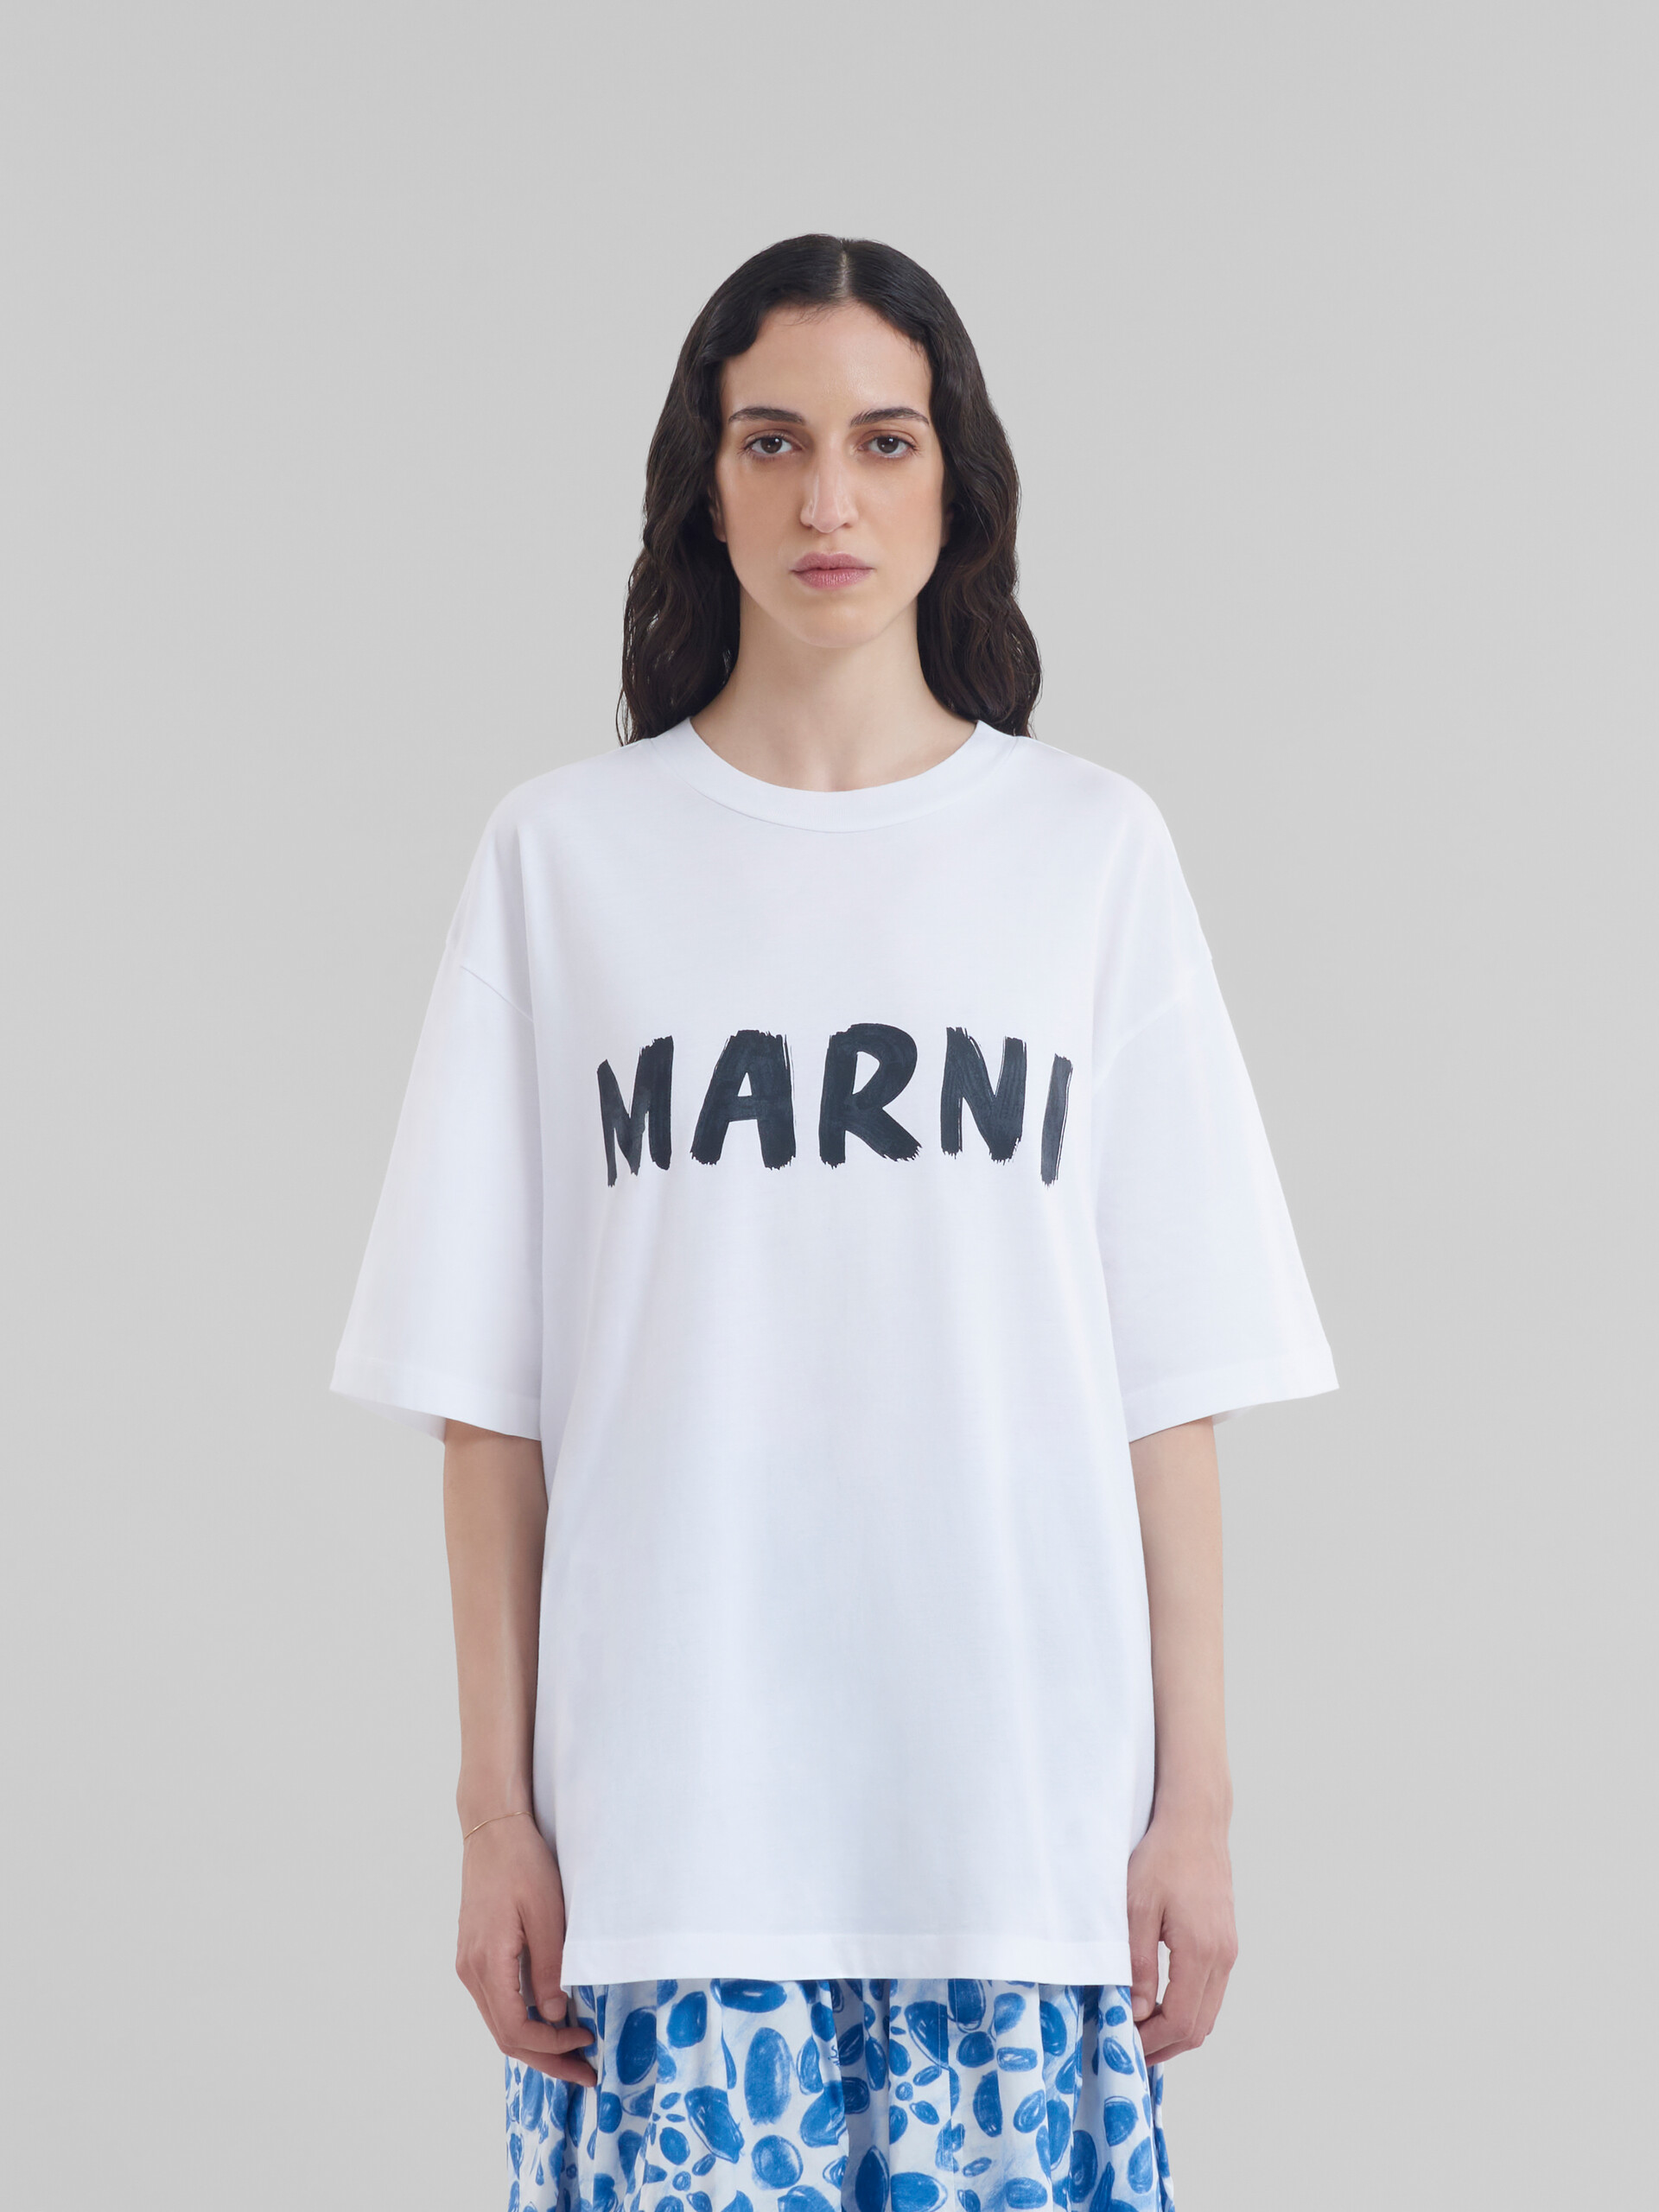 ホワイト×ブラック♡サイズ【新品未使用】MARNI マルニ Tシャツ